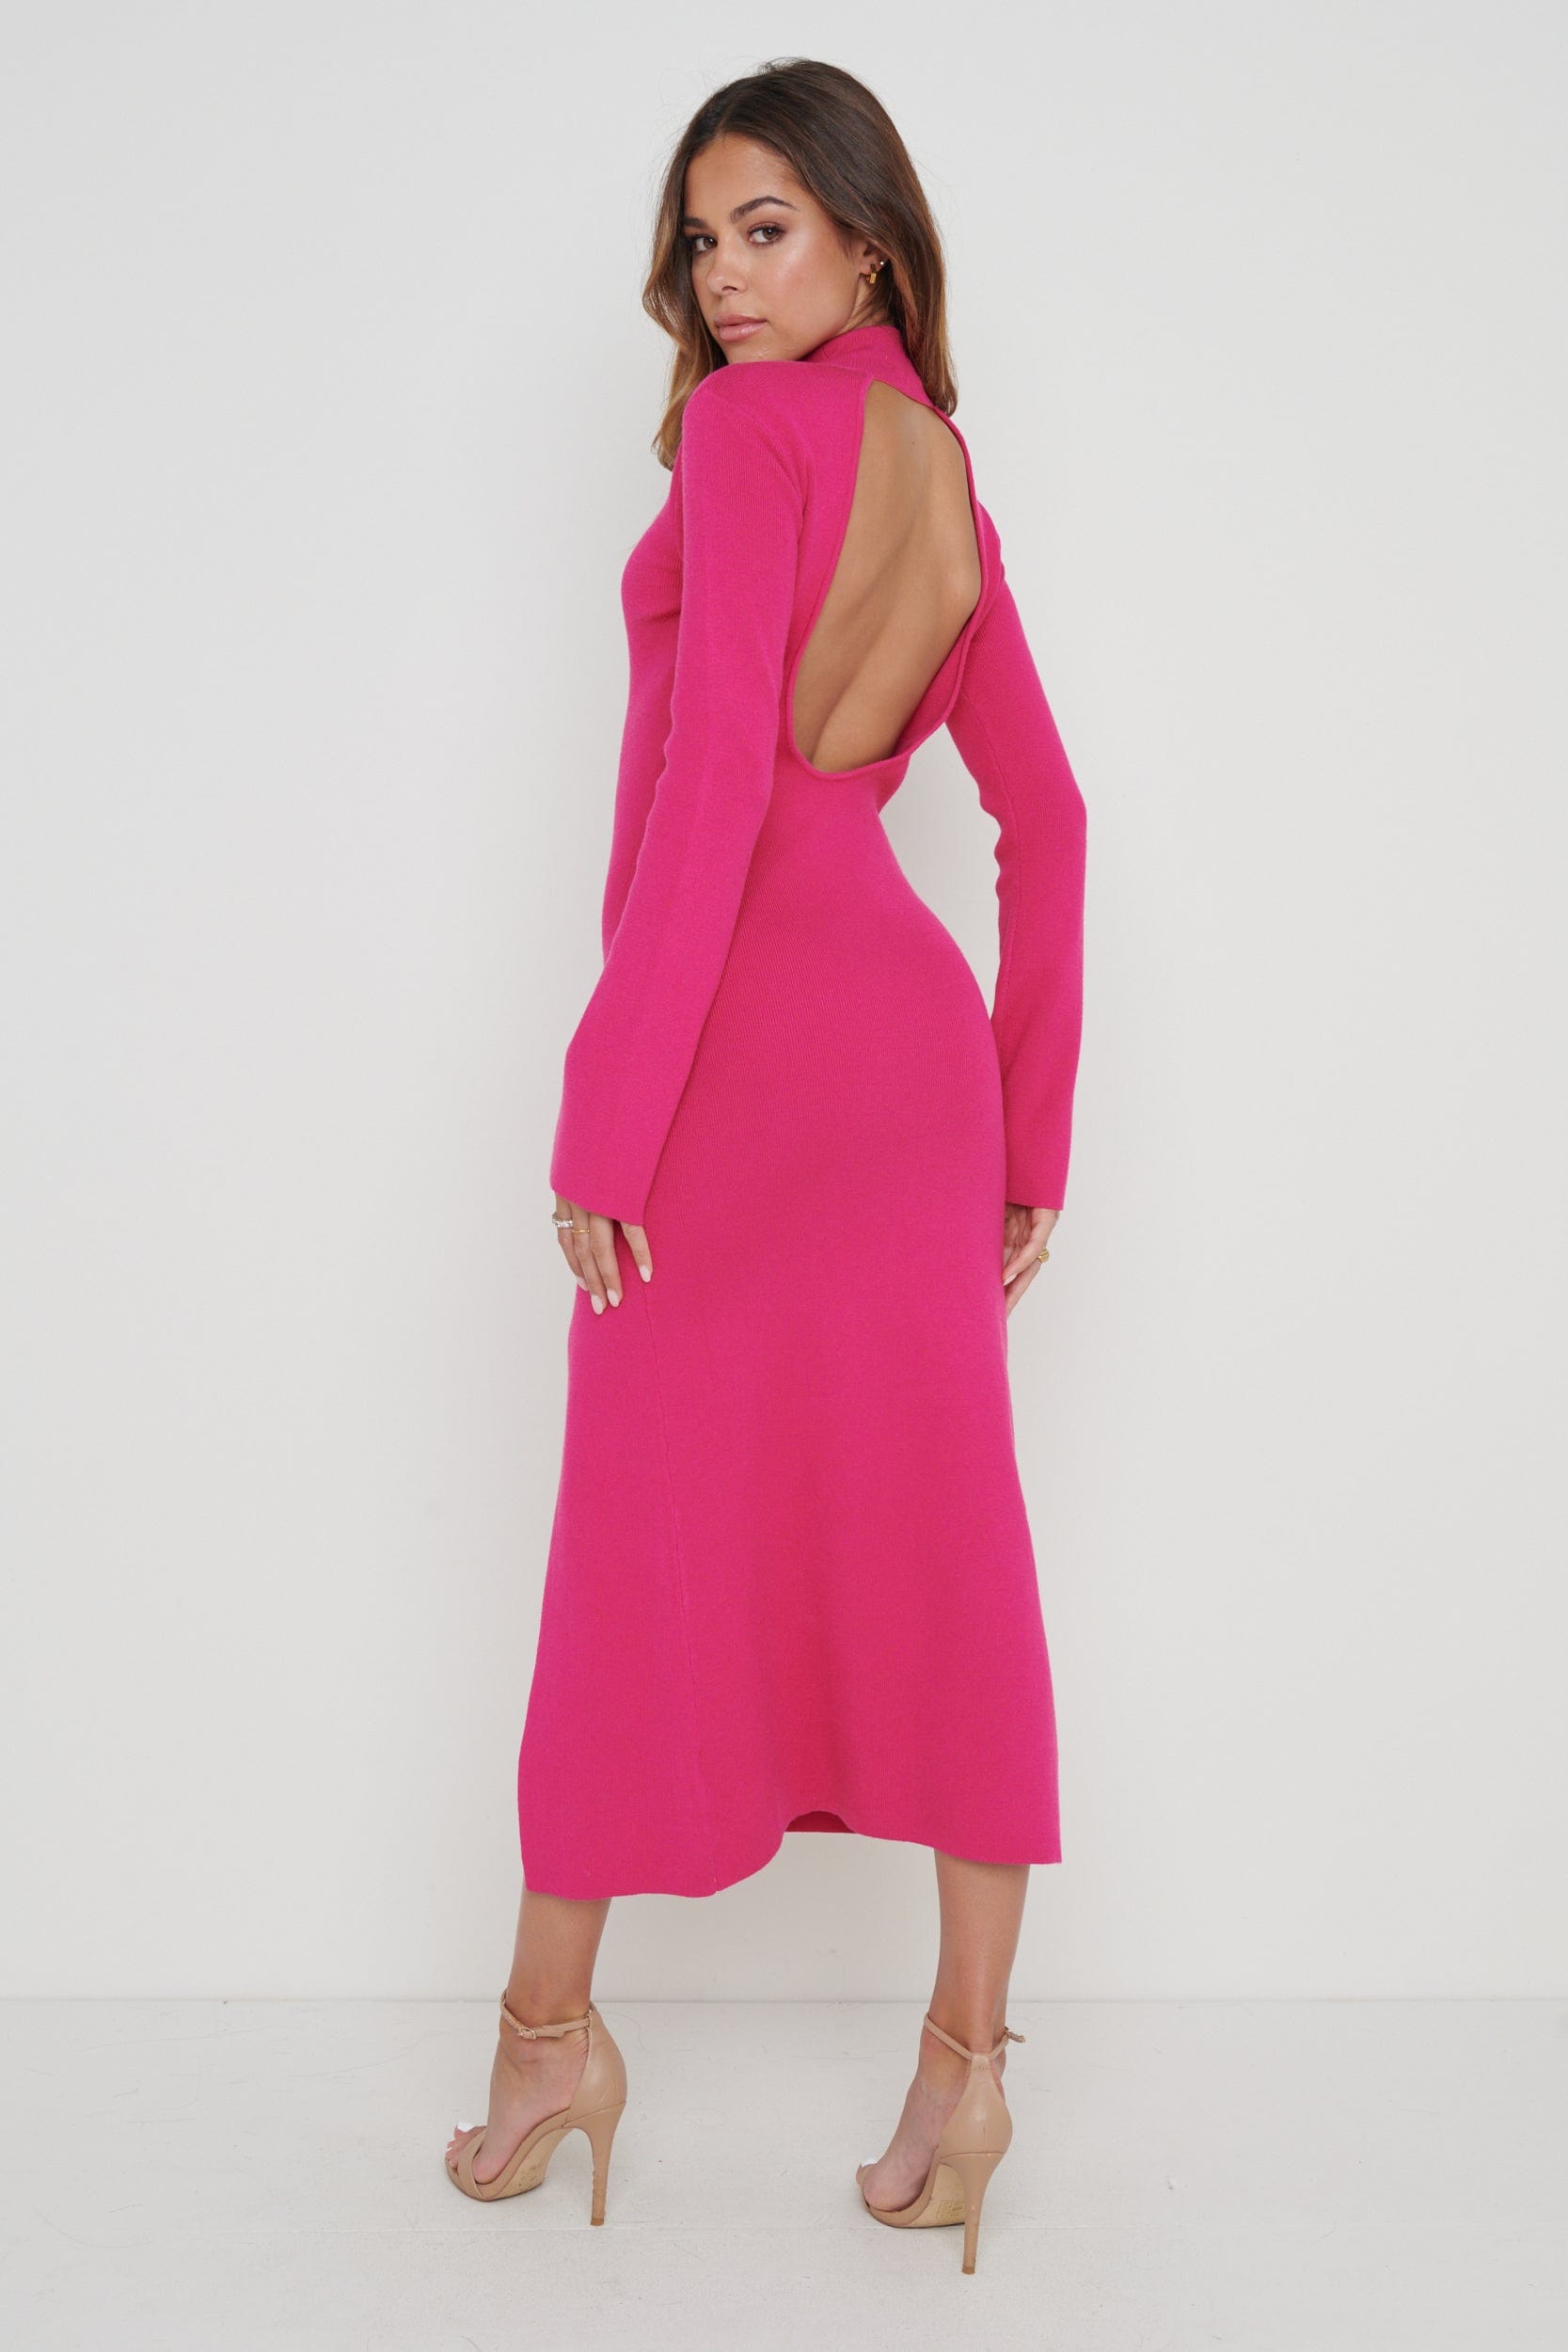 Brielle High Neck Midaxi Knit Dress - Pink, XS